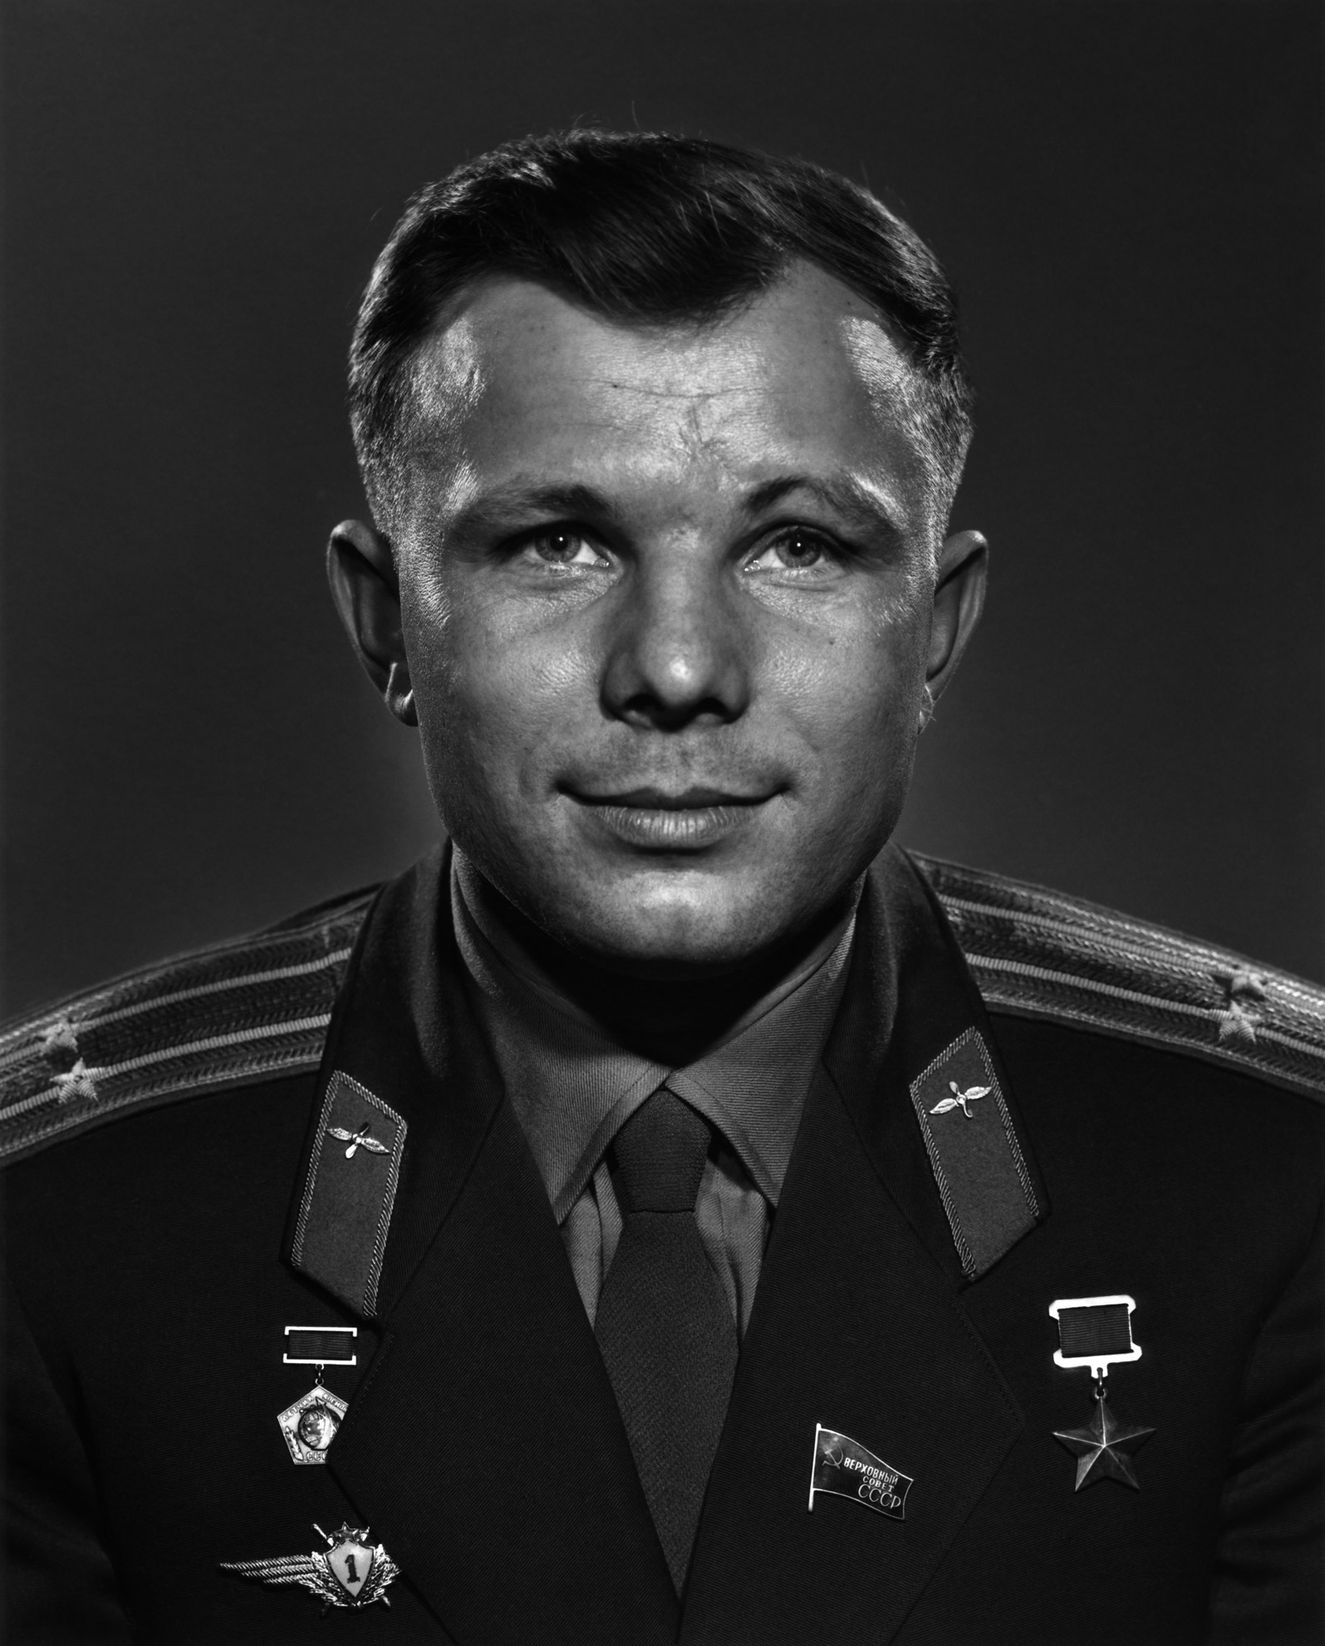 Yuri Alexeyevich Gagarin, öldüğünde henüz 34 yaşındaydı. 